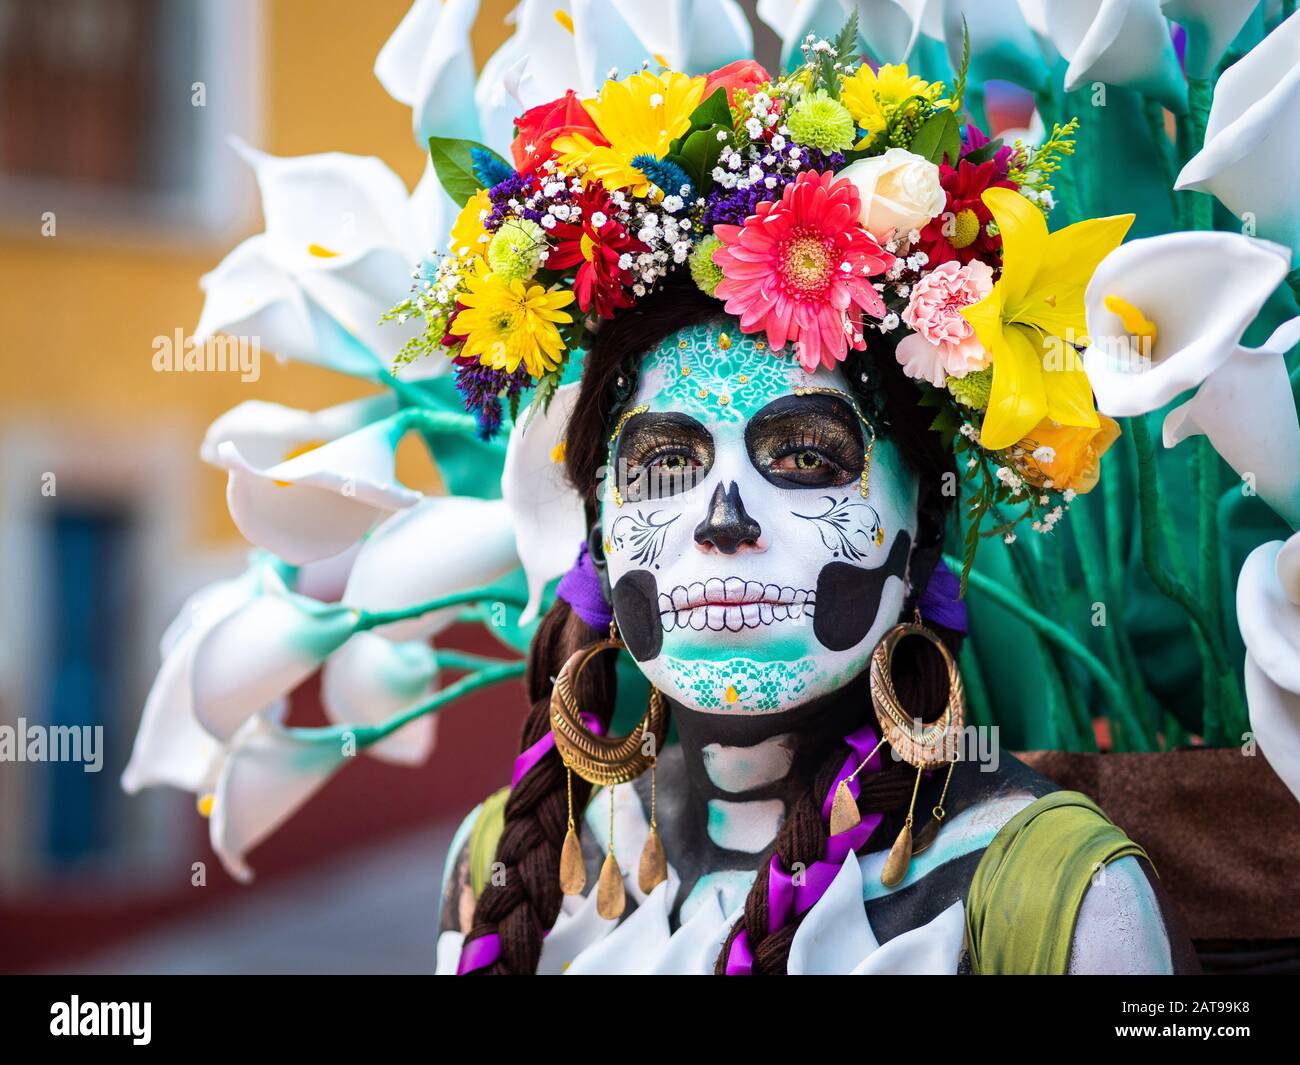 Portrait d'une femme avec de beaux costumes sur le thème de la Journée des morts et maquillage du crâne dans les rues de Guanajuato, au Mexique. Banque D'Images